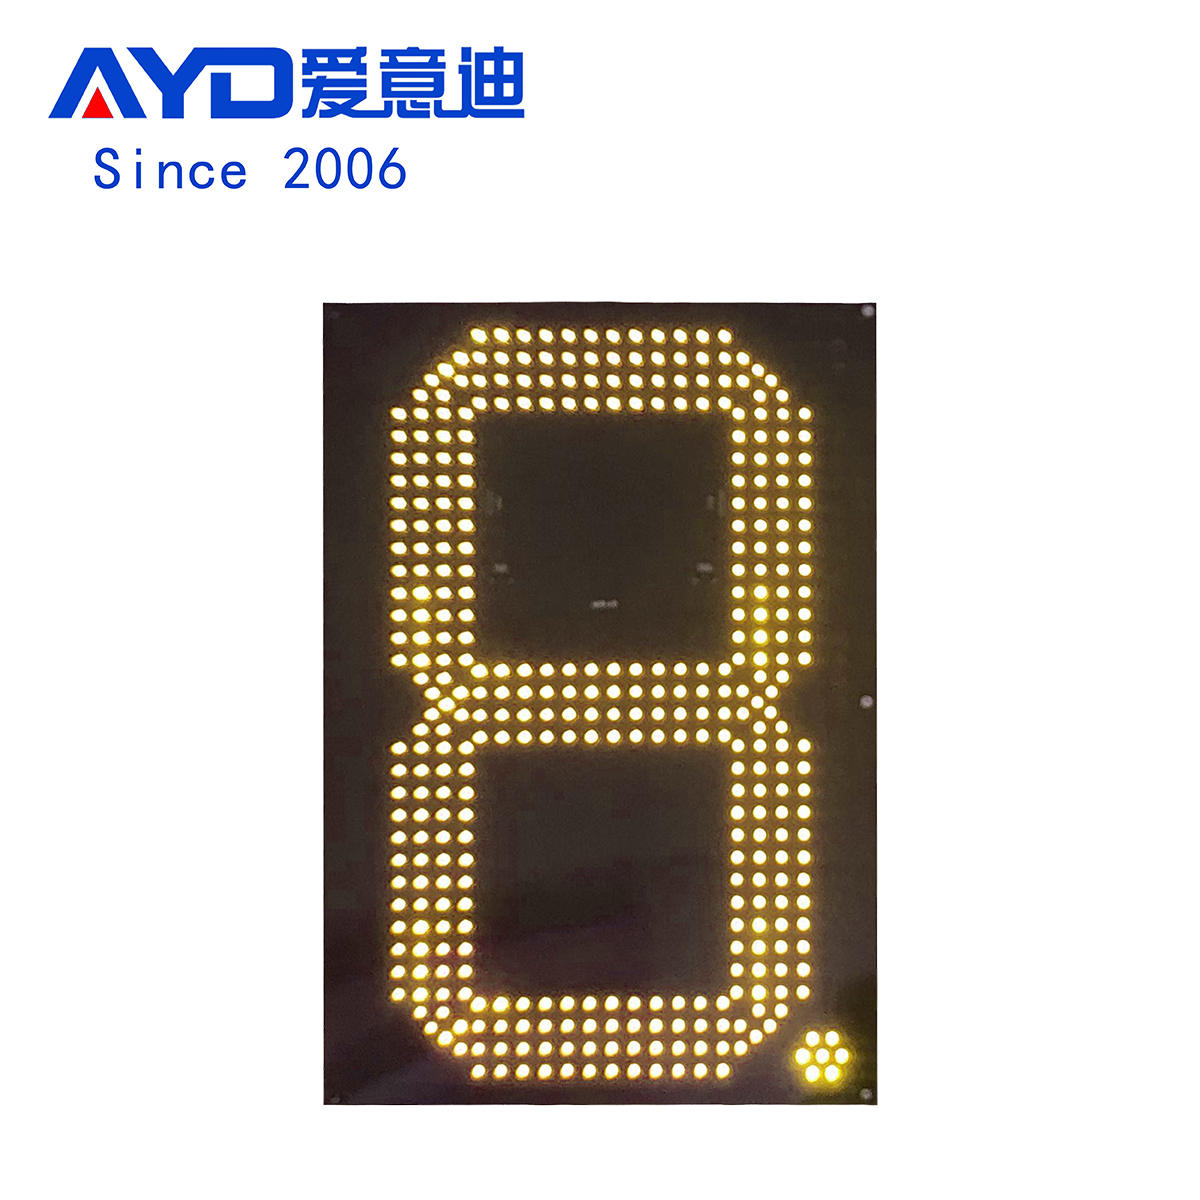 24 Inch Yellow LED Digital Board